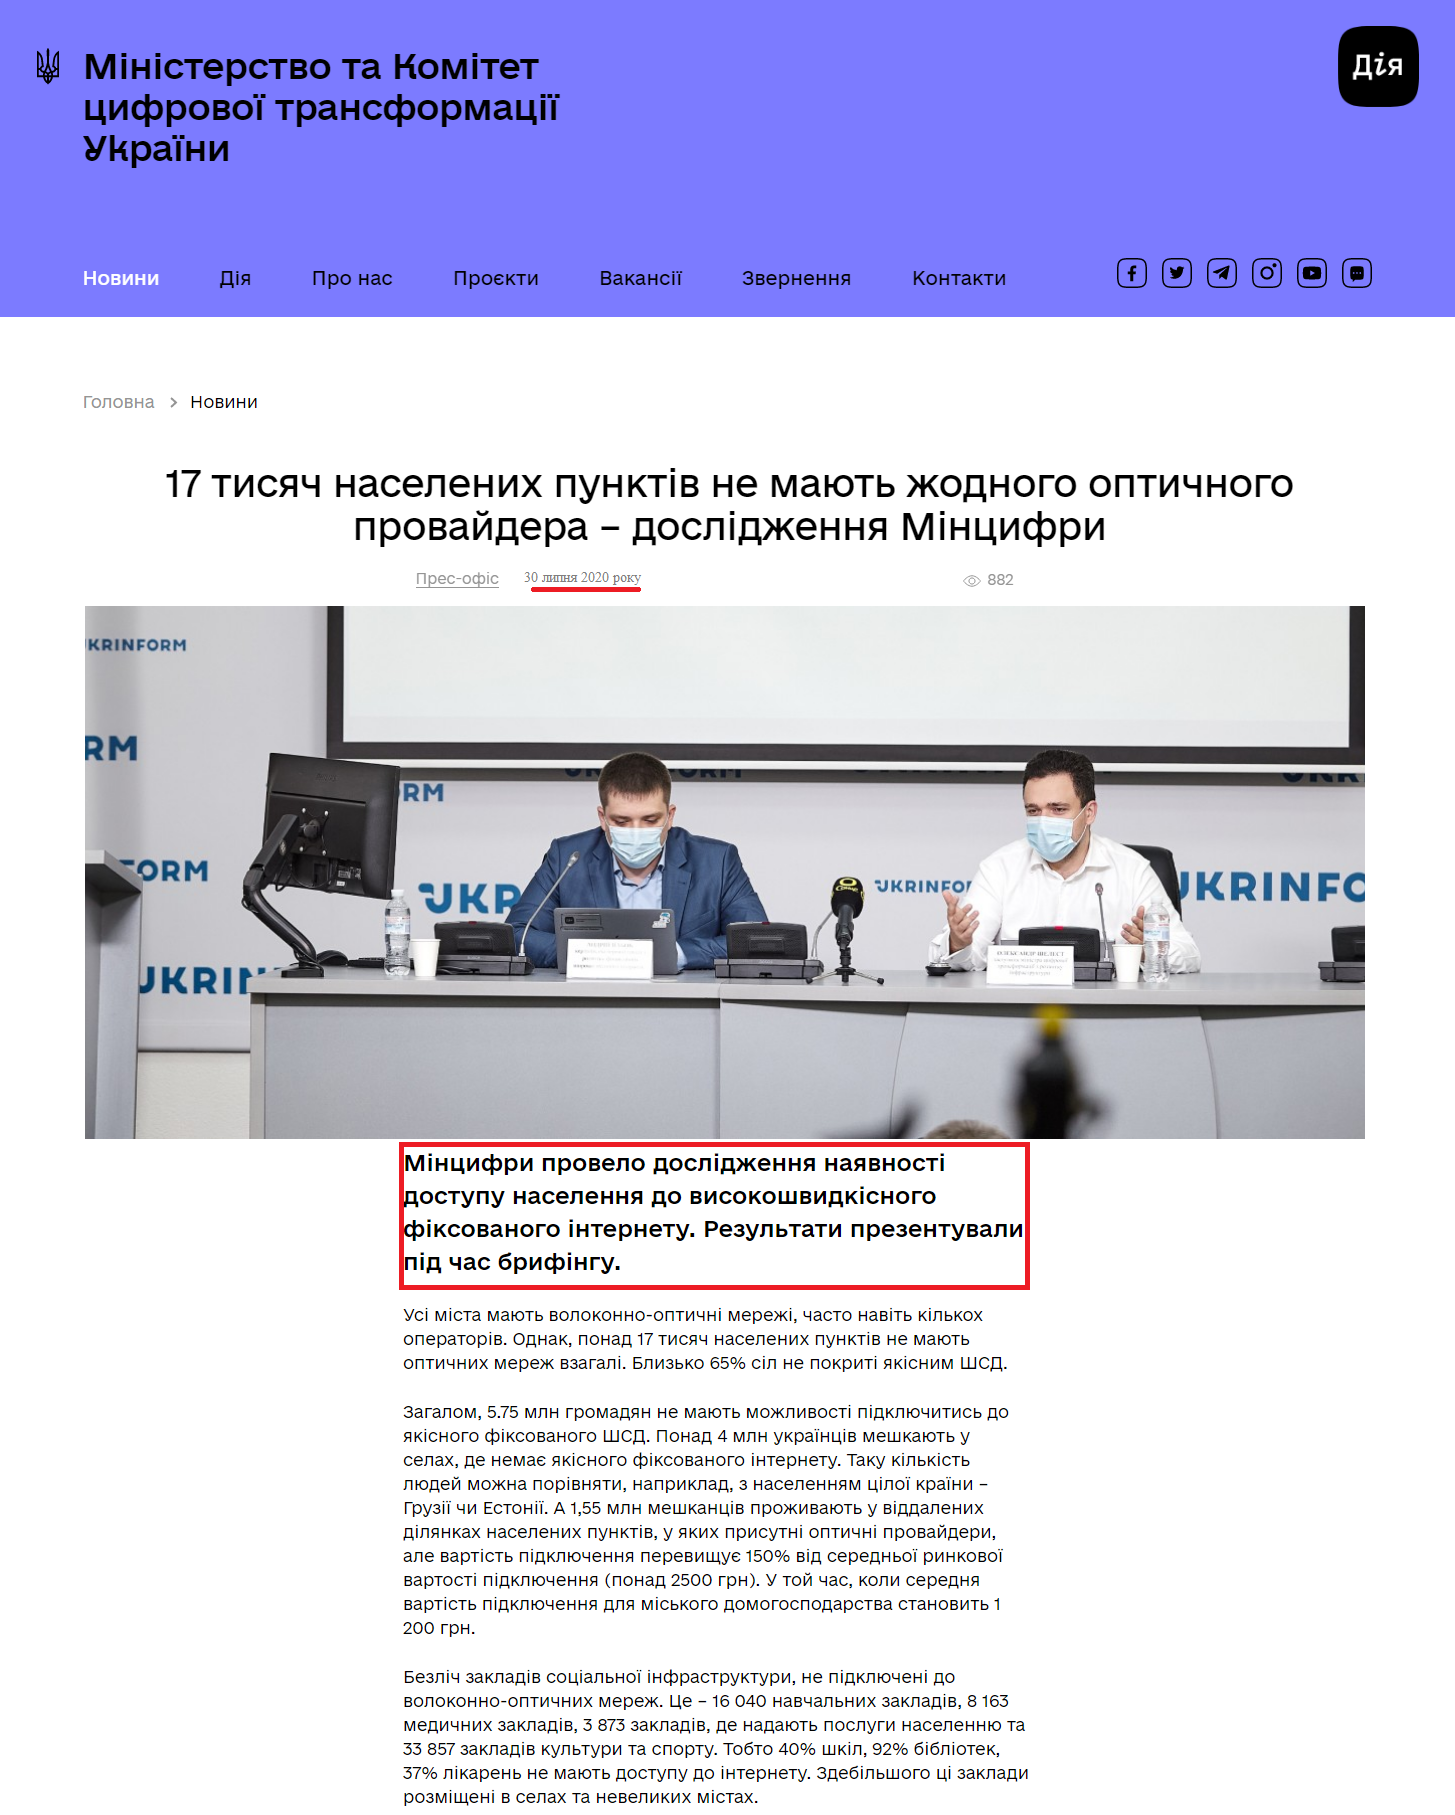 https://thedigital.gov.ua/news/17-tisyach-naselenikh-punktiv-ne-mayut-zhodnogo-optichnogo-provaydera-doslidzhennya-mintsifri